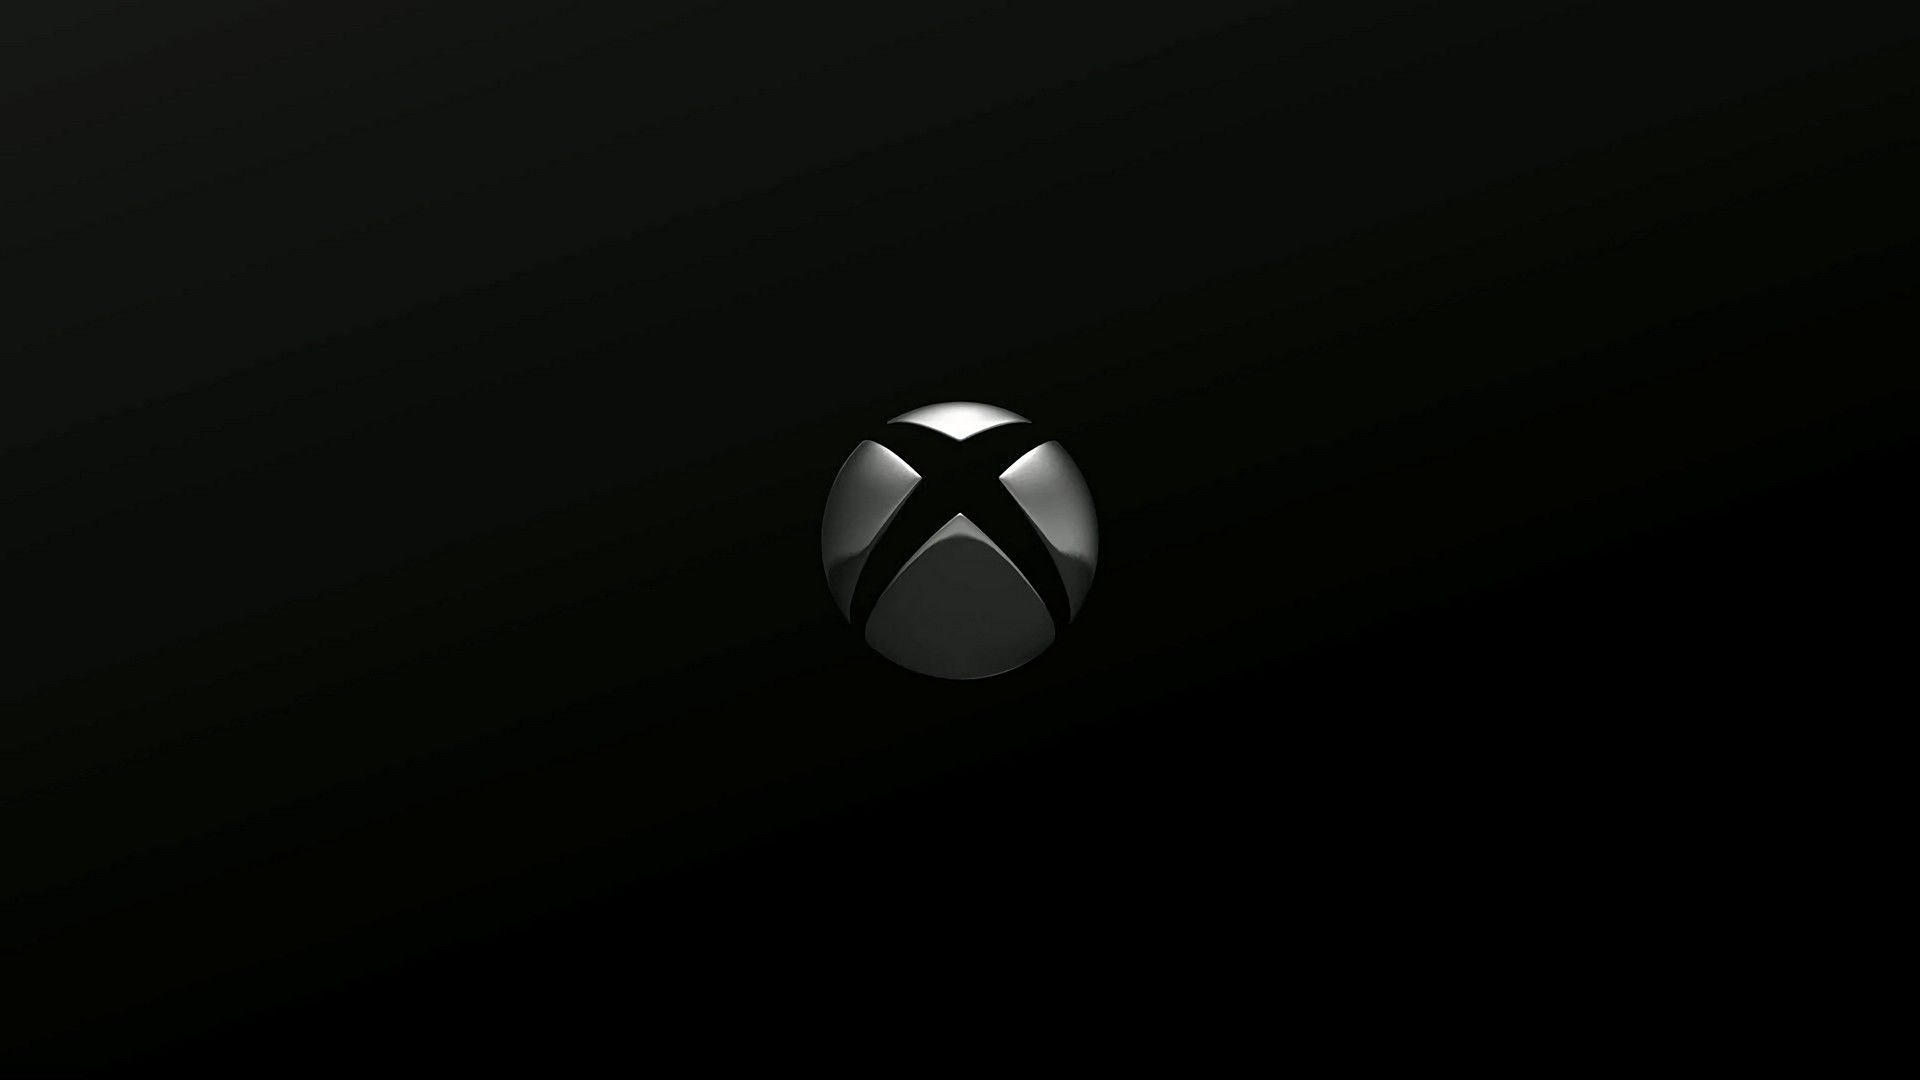 VOLTOU! Promoção AMADA do Xbox Game Pass está de volta!